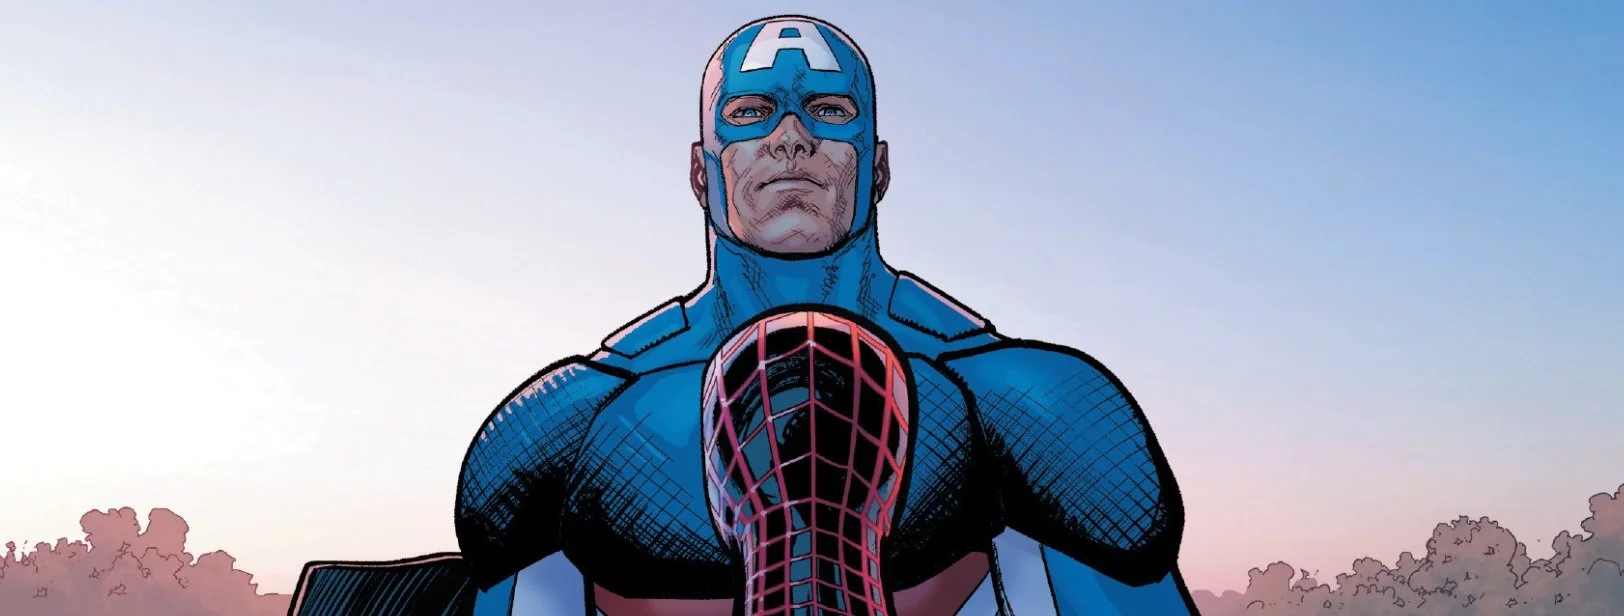 Marvel убила Железного человека в новом выпуске Civil War II? - фото 7